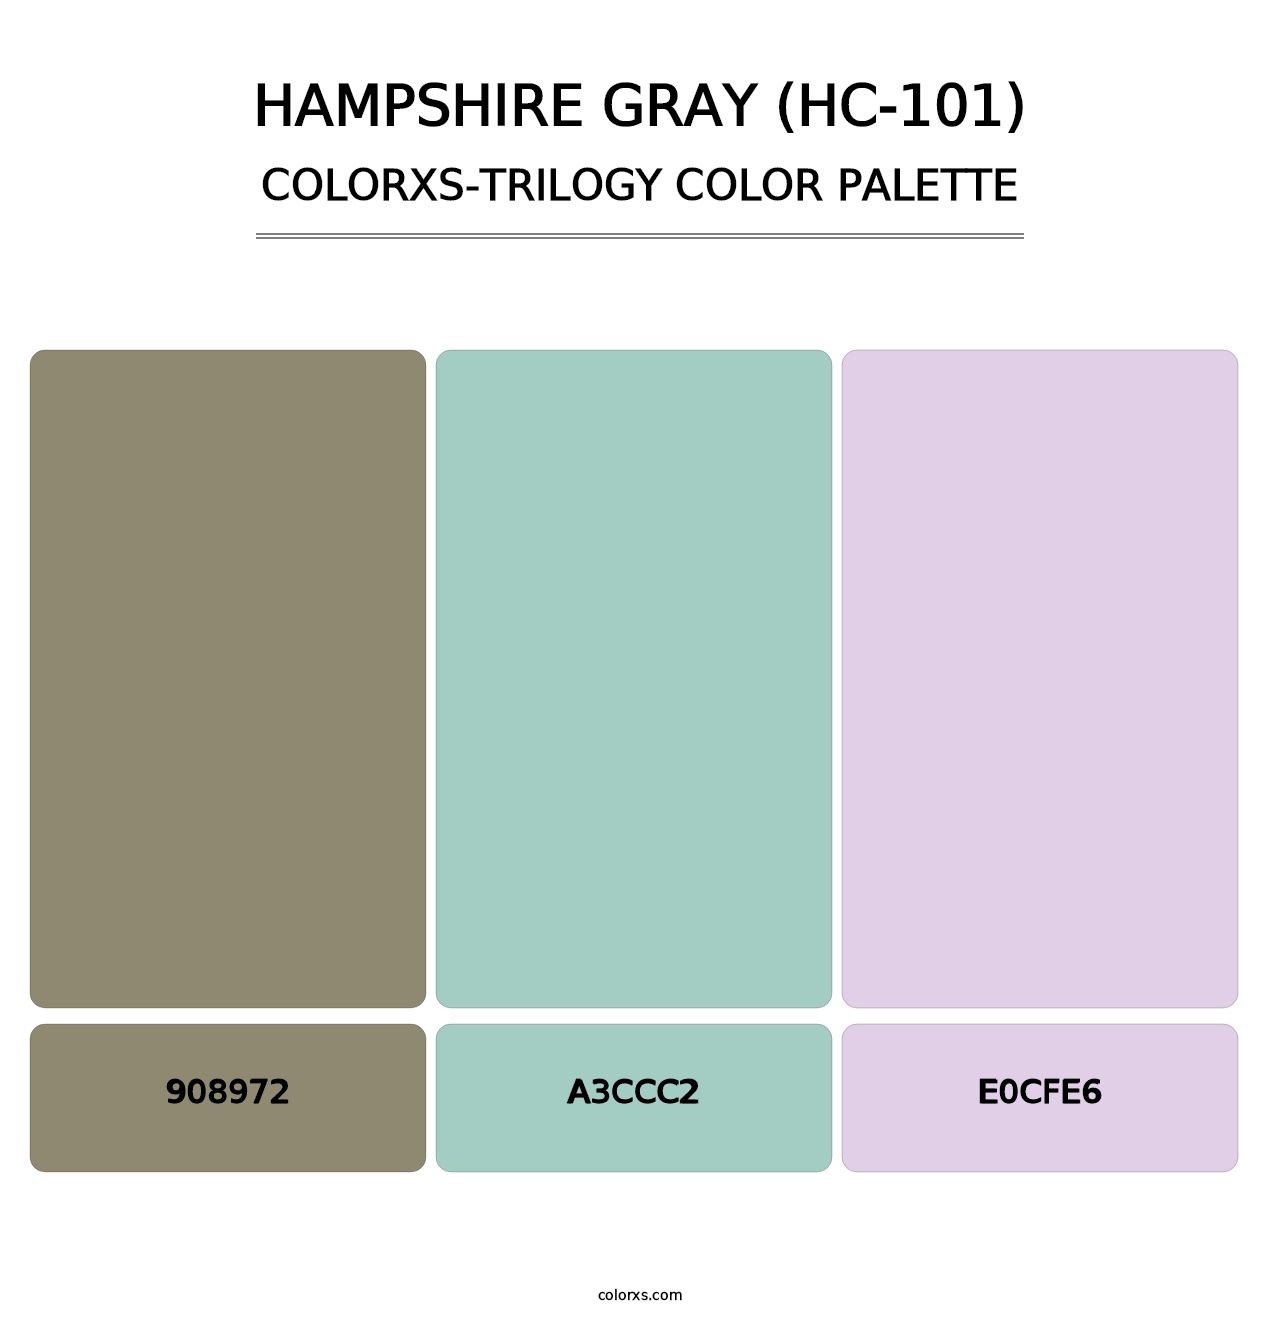 Hampshire Gray (HC-101) - Colorxs Trilogy Palette